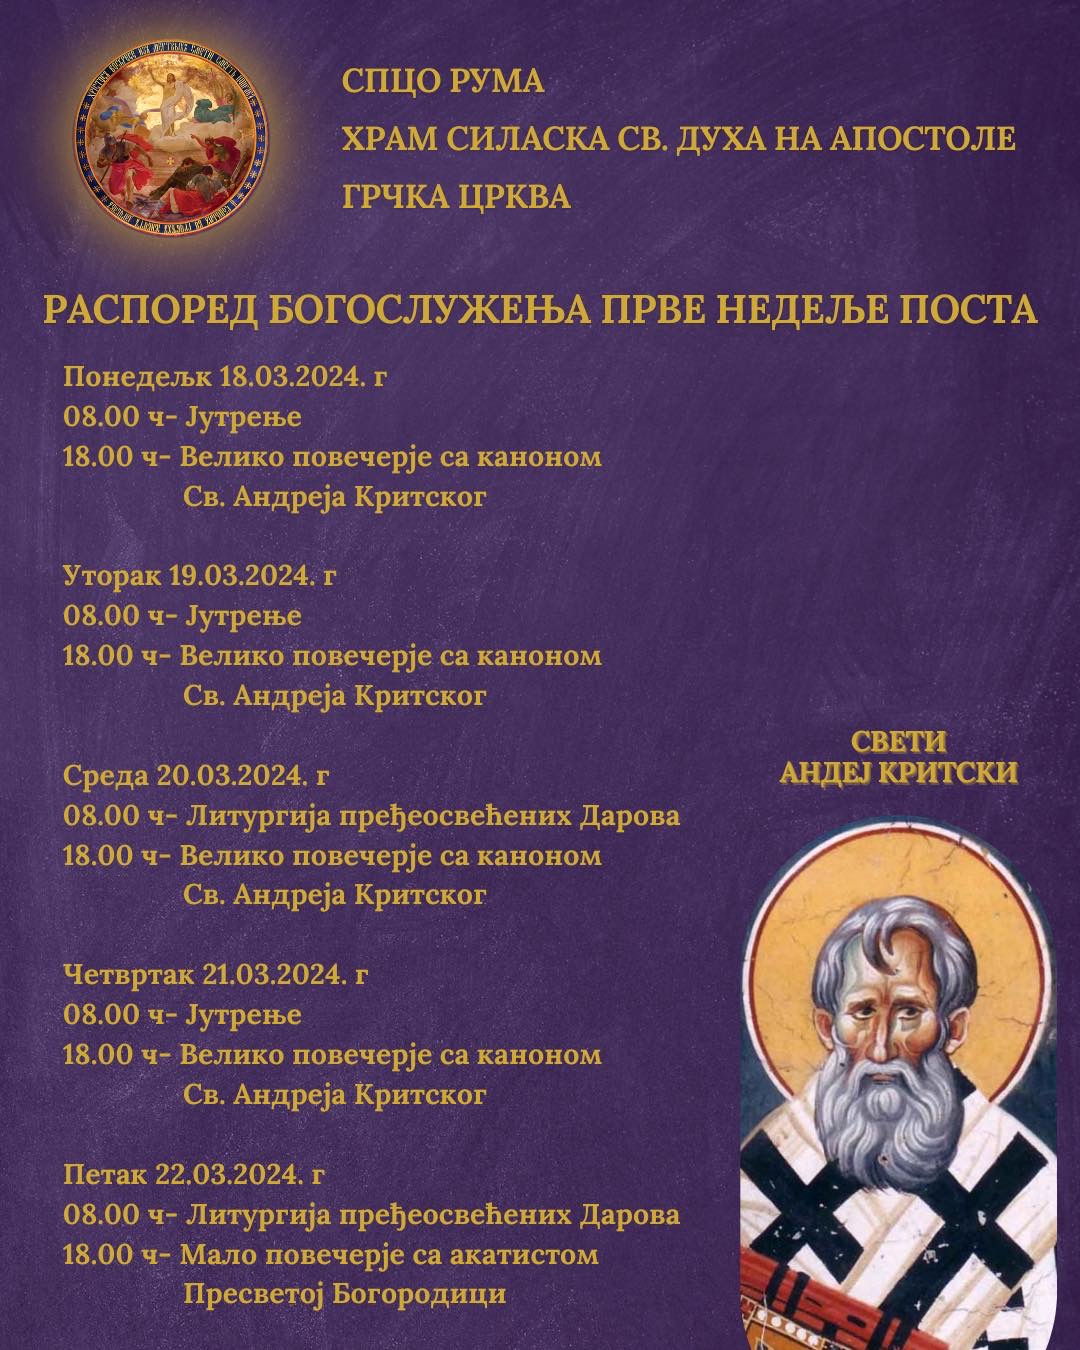 Распоред богослужења у Саборном храму Силаска Светог Духа на апостоле у Руми